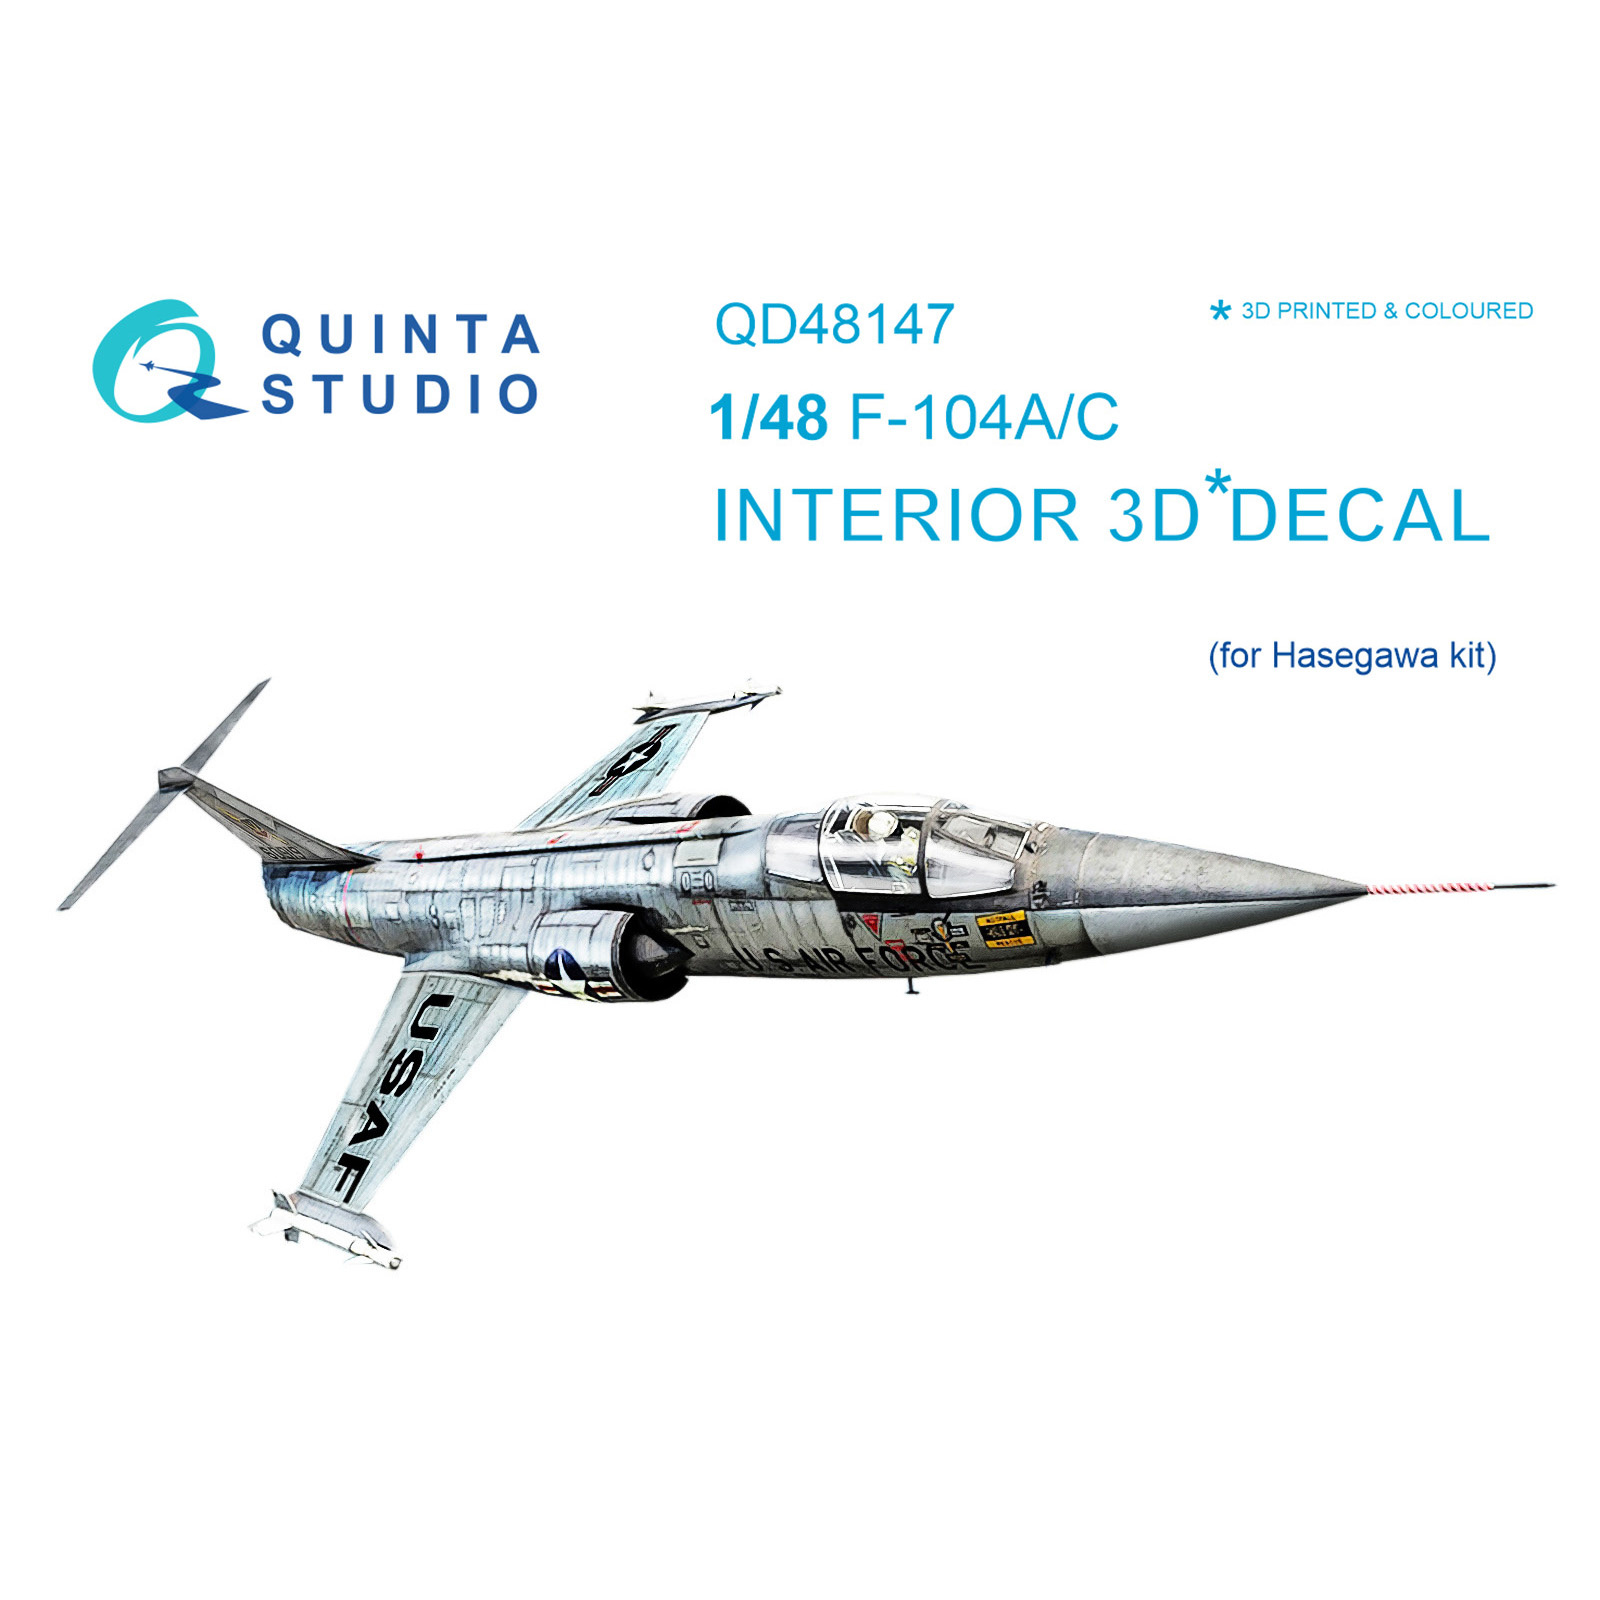 QD48147 Quinta Studio 1/48 3D Декаль интерьера кабины F-104A/C (для модели Hasegawa)